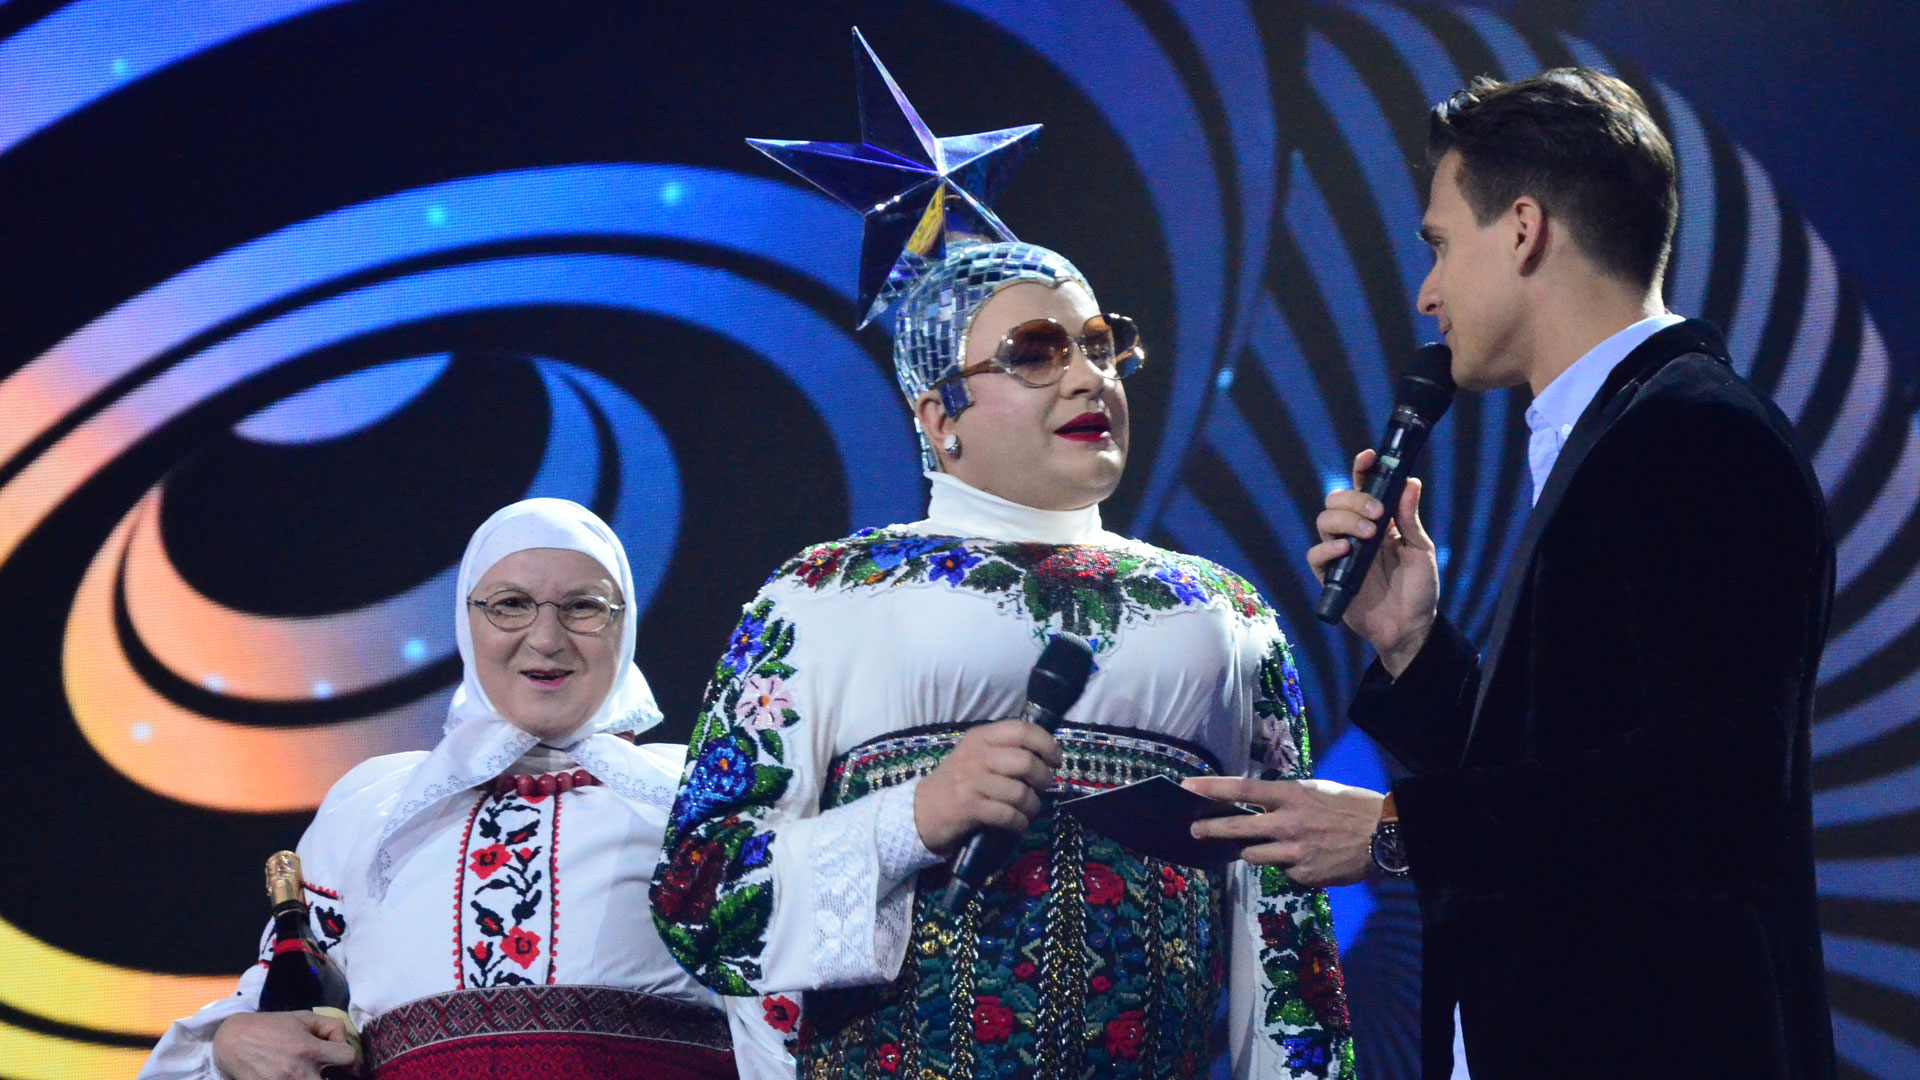 Weird Eurovision star Verka